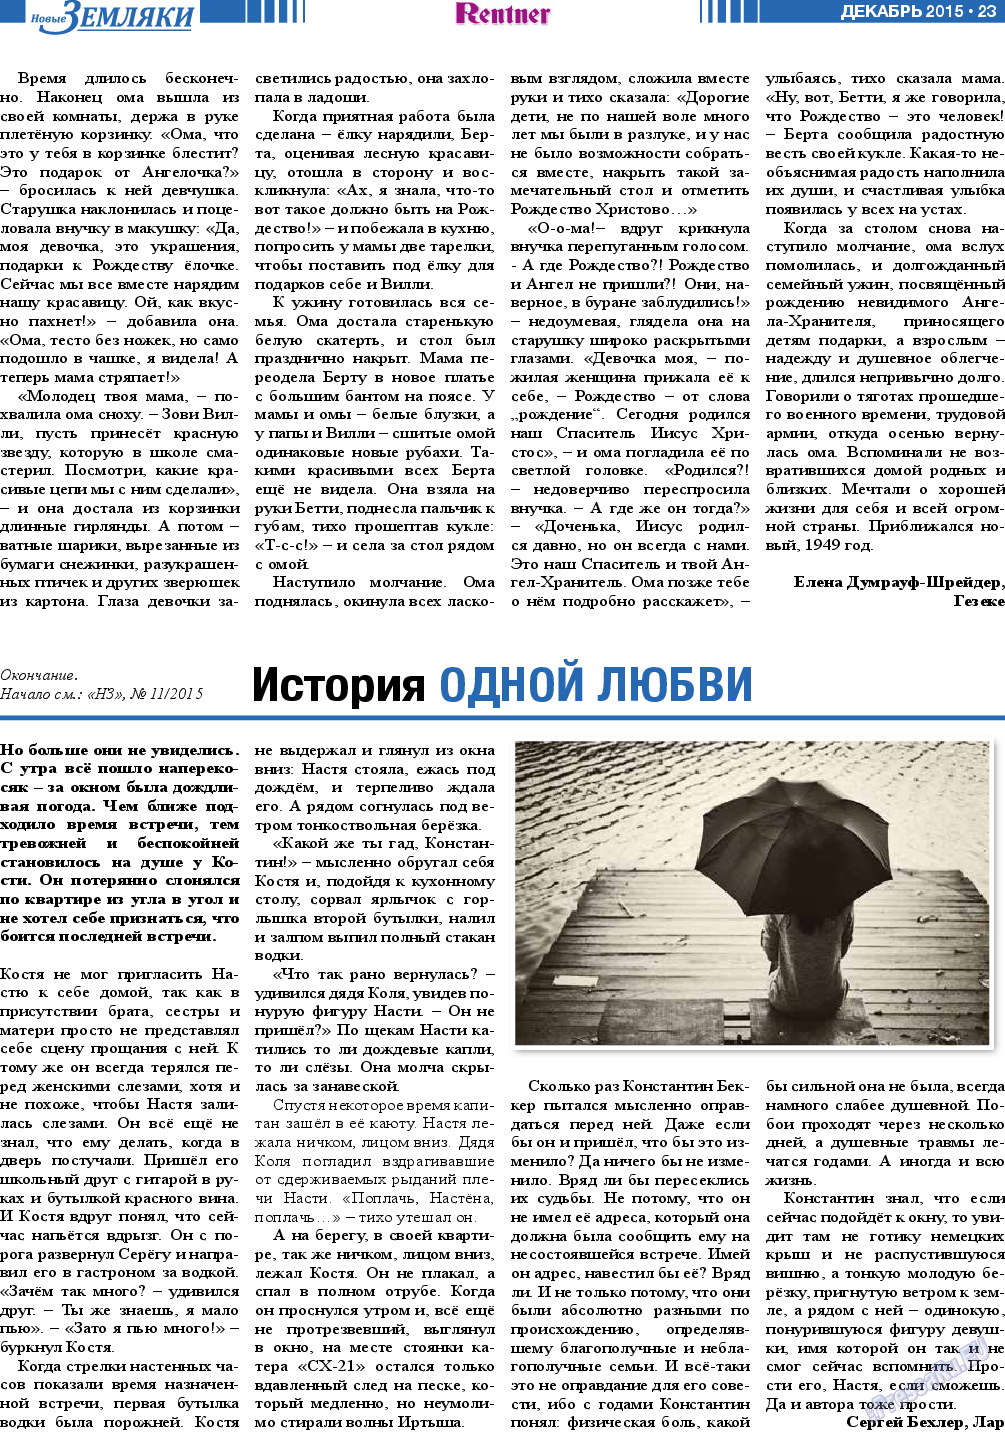 Новые Земляки, газета. 2015 №12 стр.23